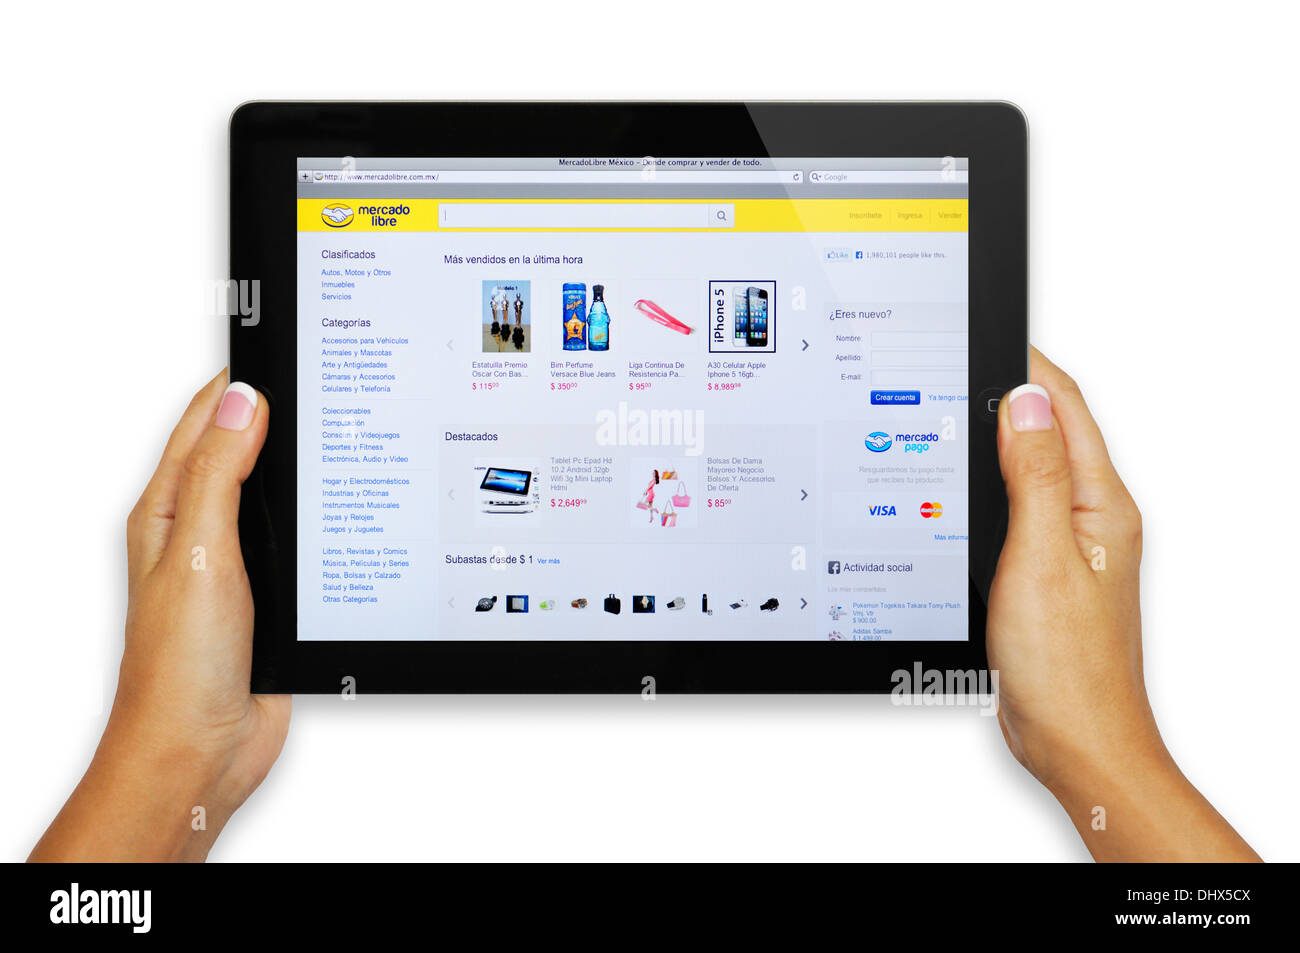 Mercado Libre online shopping website on iPad screen Stock Photo